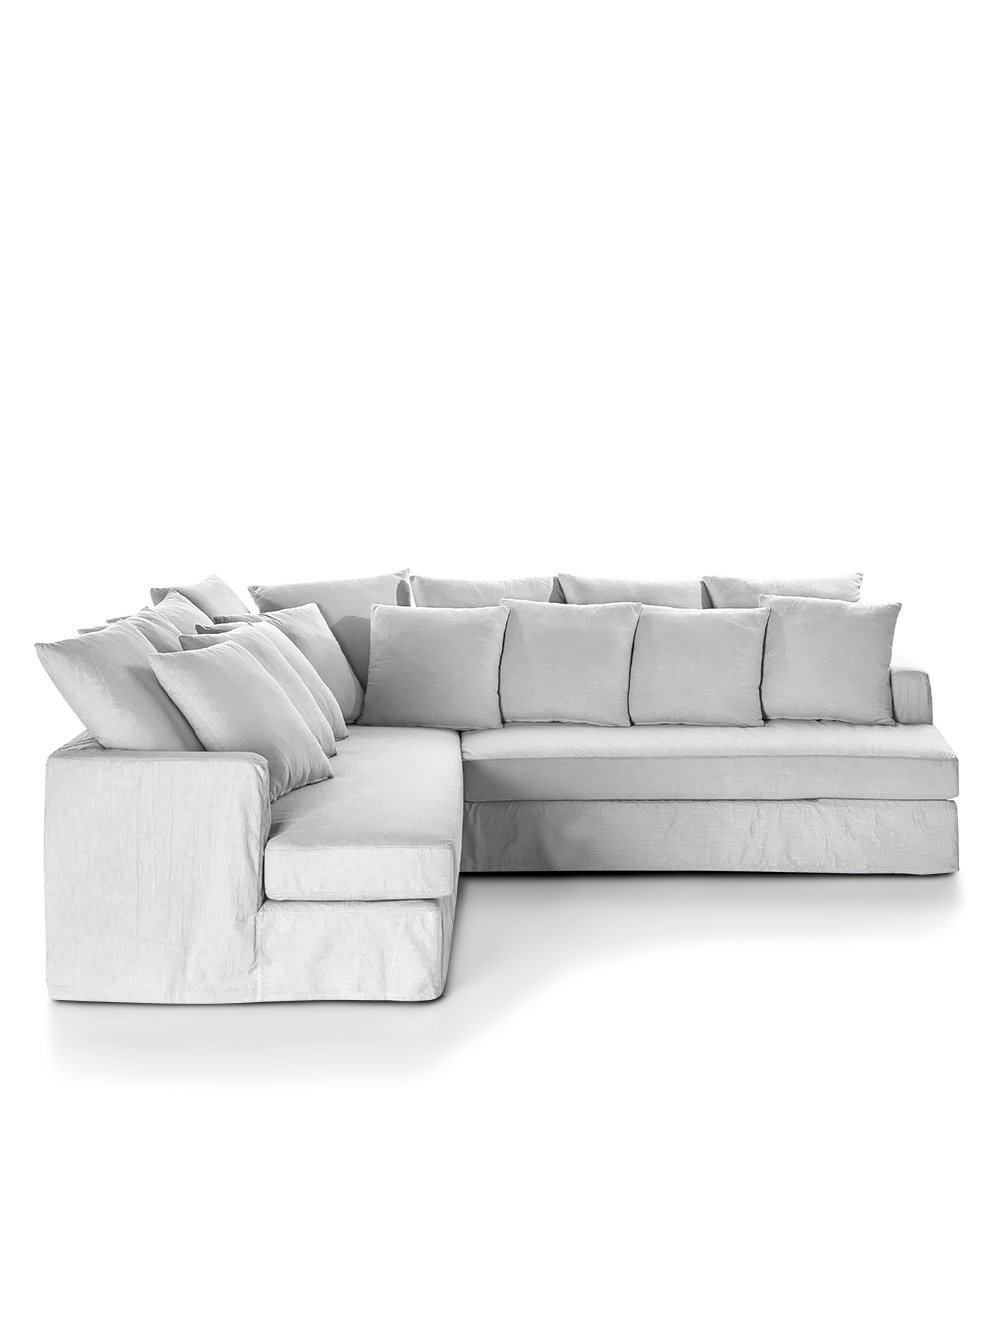 Sofa en ele blanco-LULU EN L DERECHA TUSOR BLANCO-Landmark-02.jpg image number null